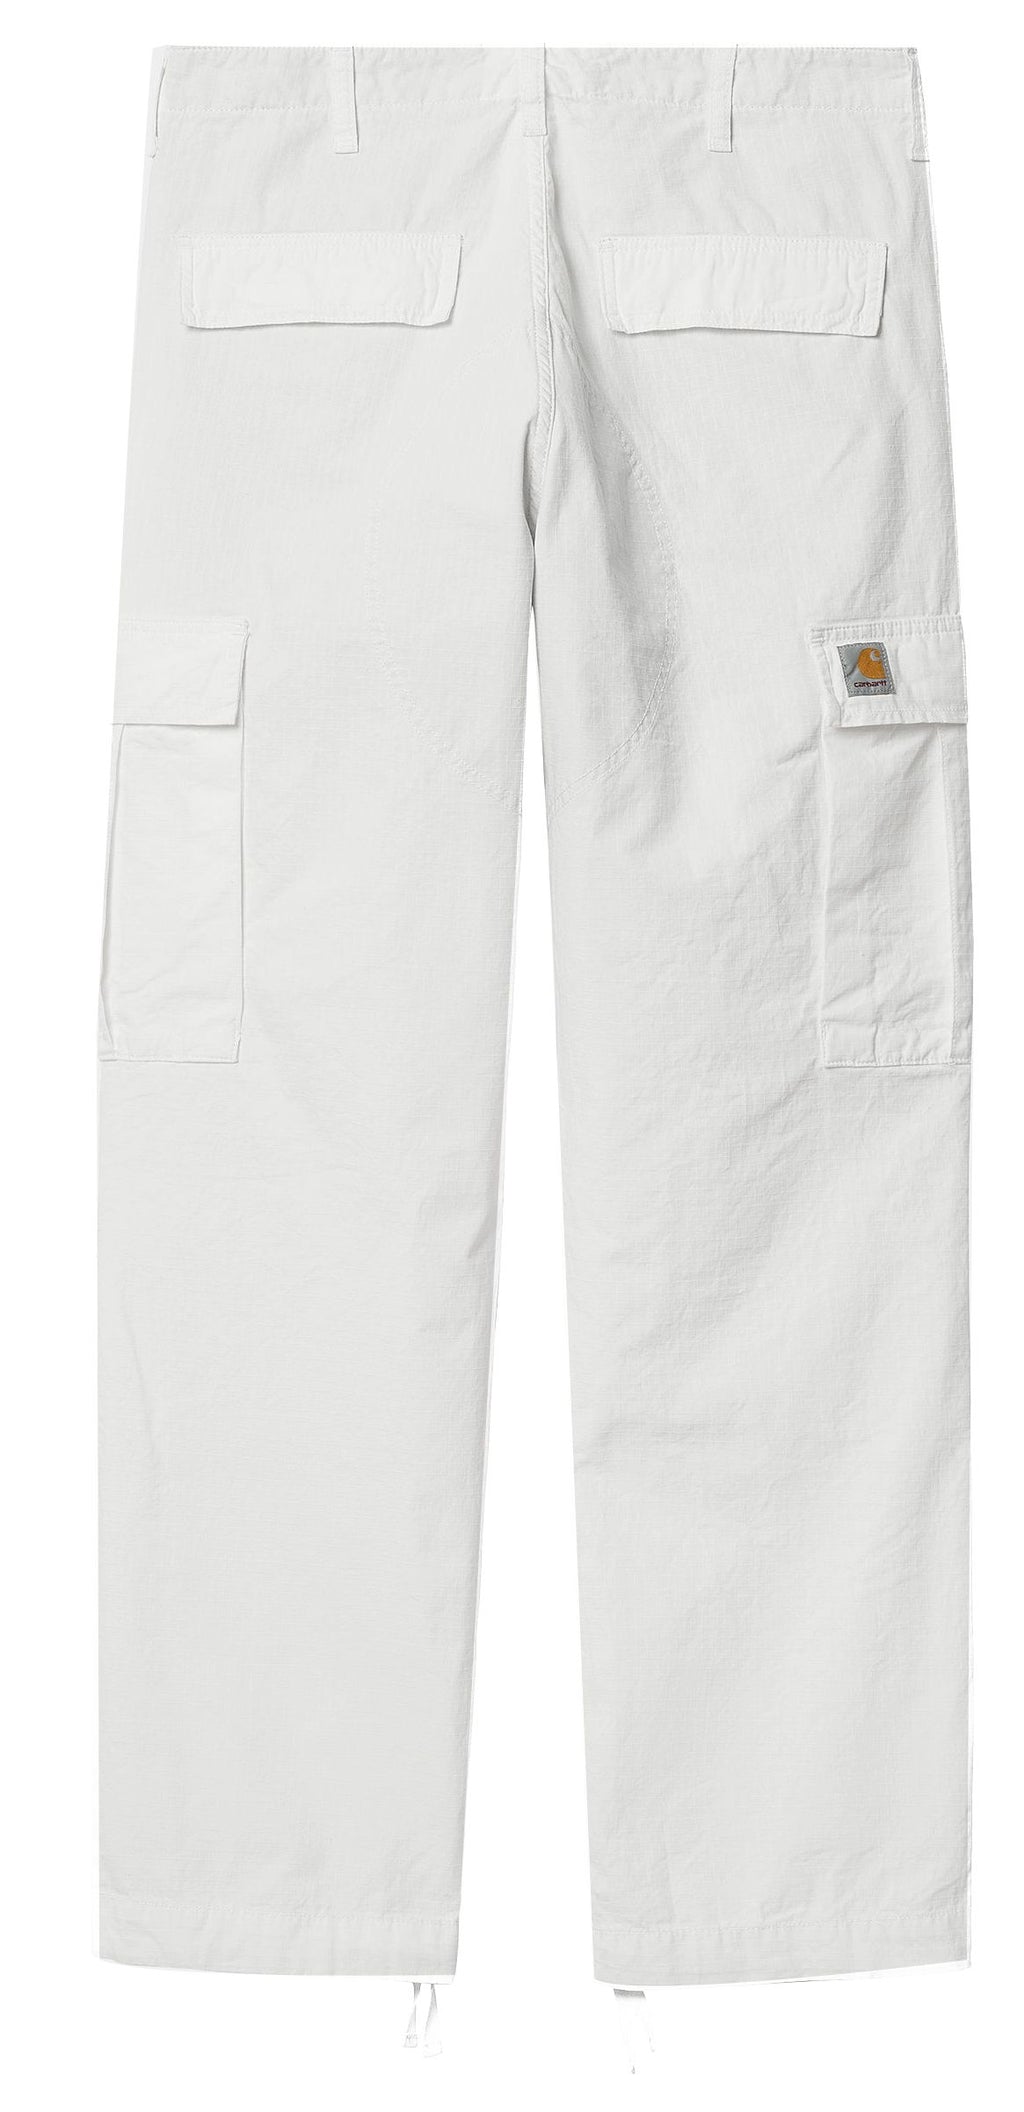  Carhartt Wip Pantaloni Regular Cargo Pant White Rinsed Bianco Uomo - 2